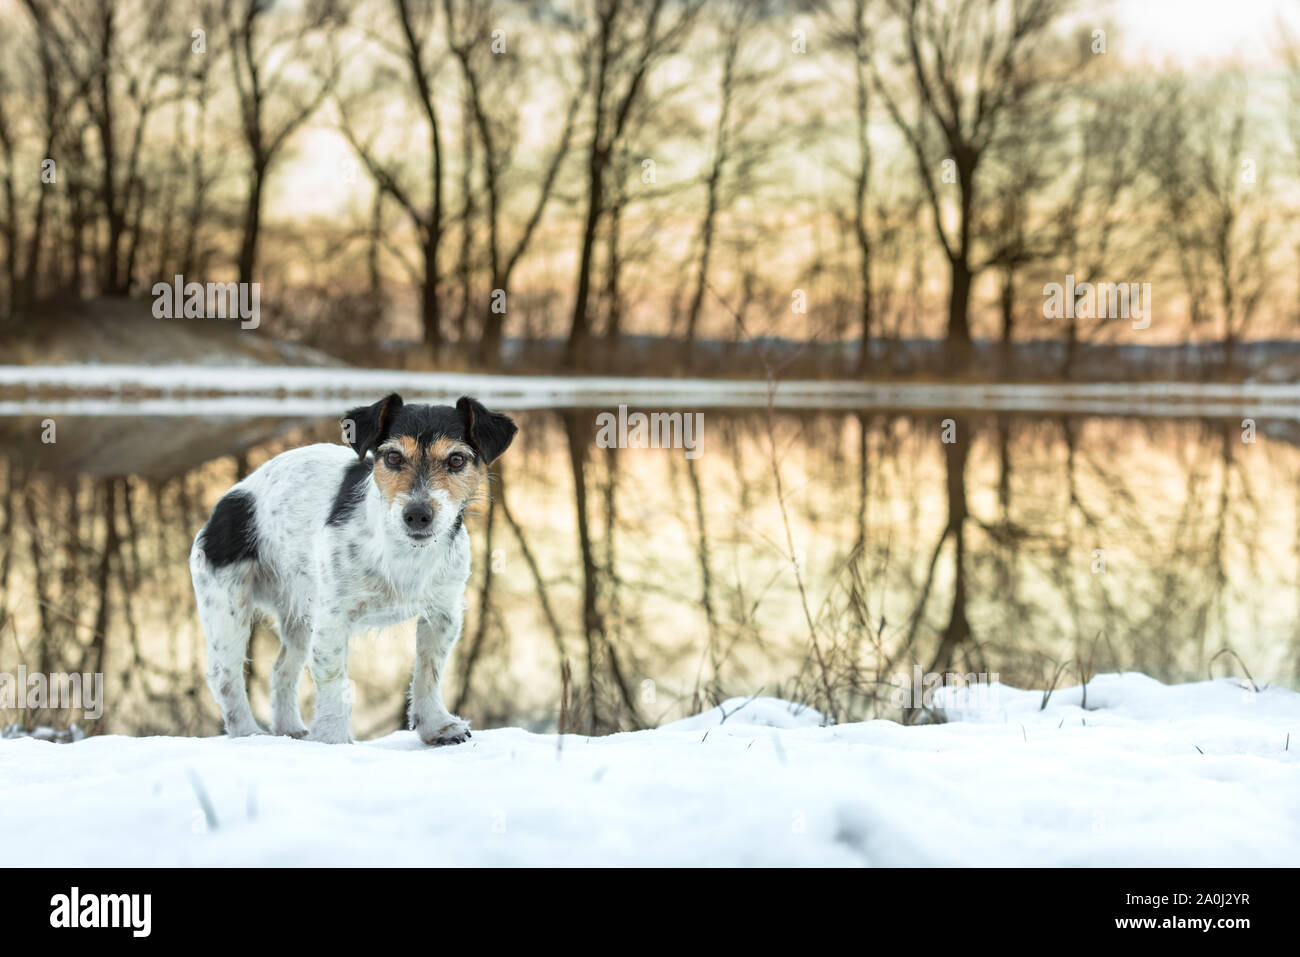 Gøre mit bedste verden Ombord Stolz, kleinen Hund steht in einem weißen Wiese im Schnee im Winter im  Abendlicht - Süße Jack Russell Terrier Hund, 8 Jahre alt, Haartyp brok  Stockfotografie - Alamy